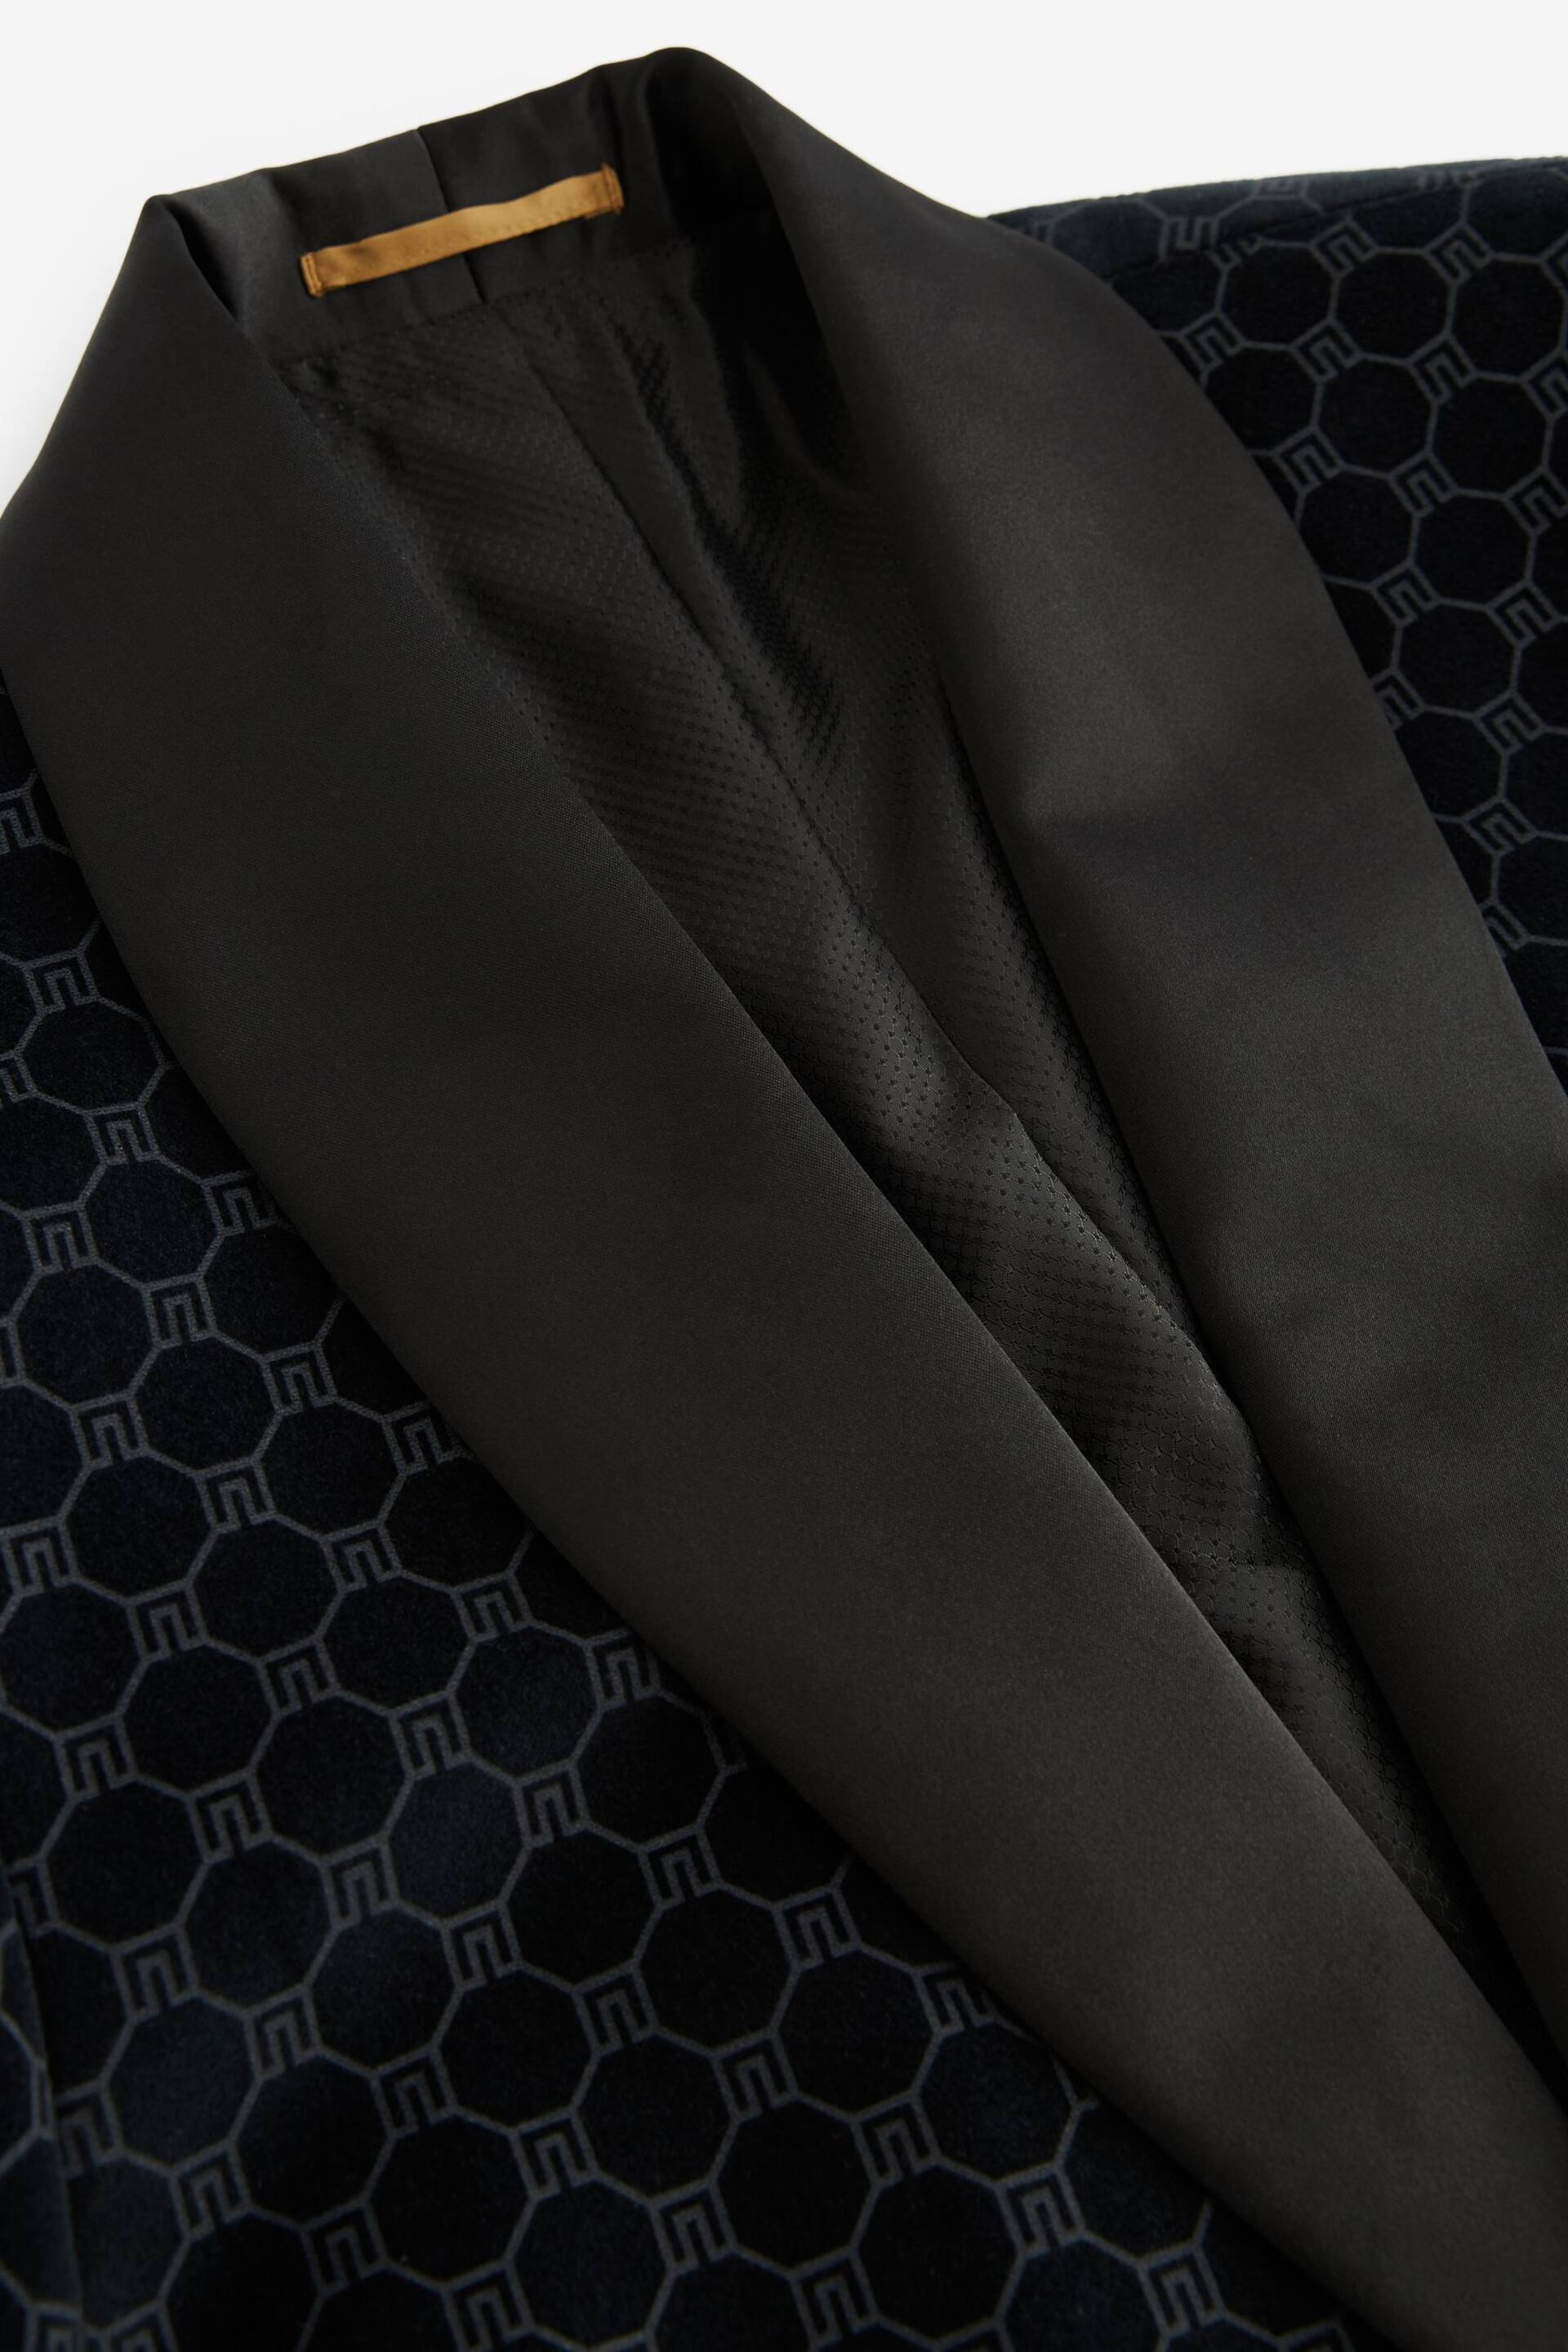 Black Slim Jacquard Tuxedo Suit Jacket - Image 6 of 10